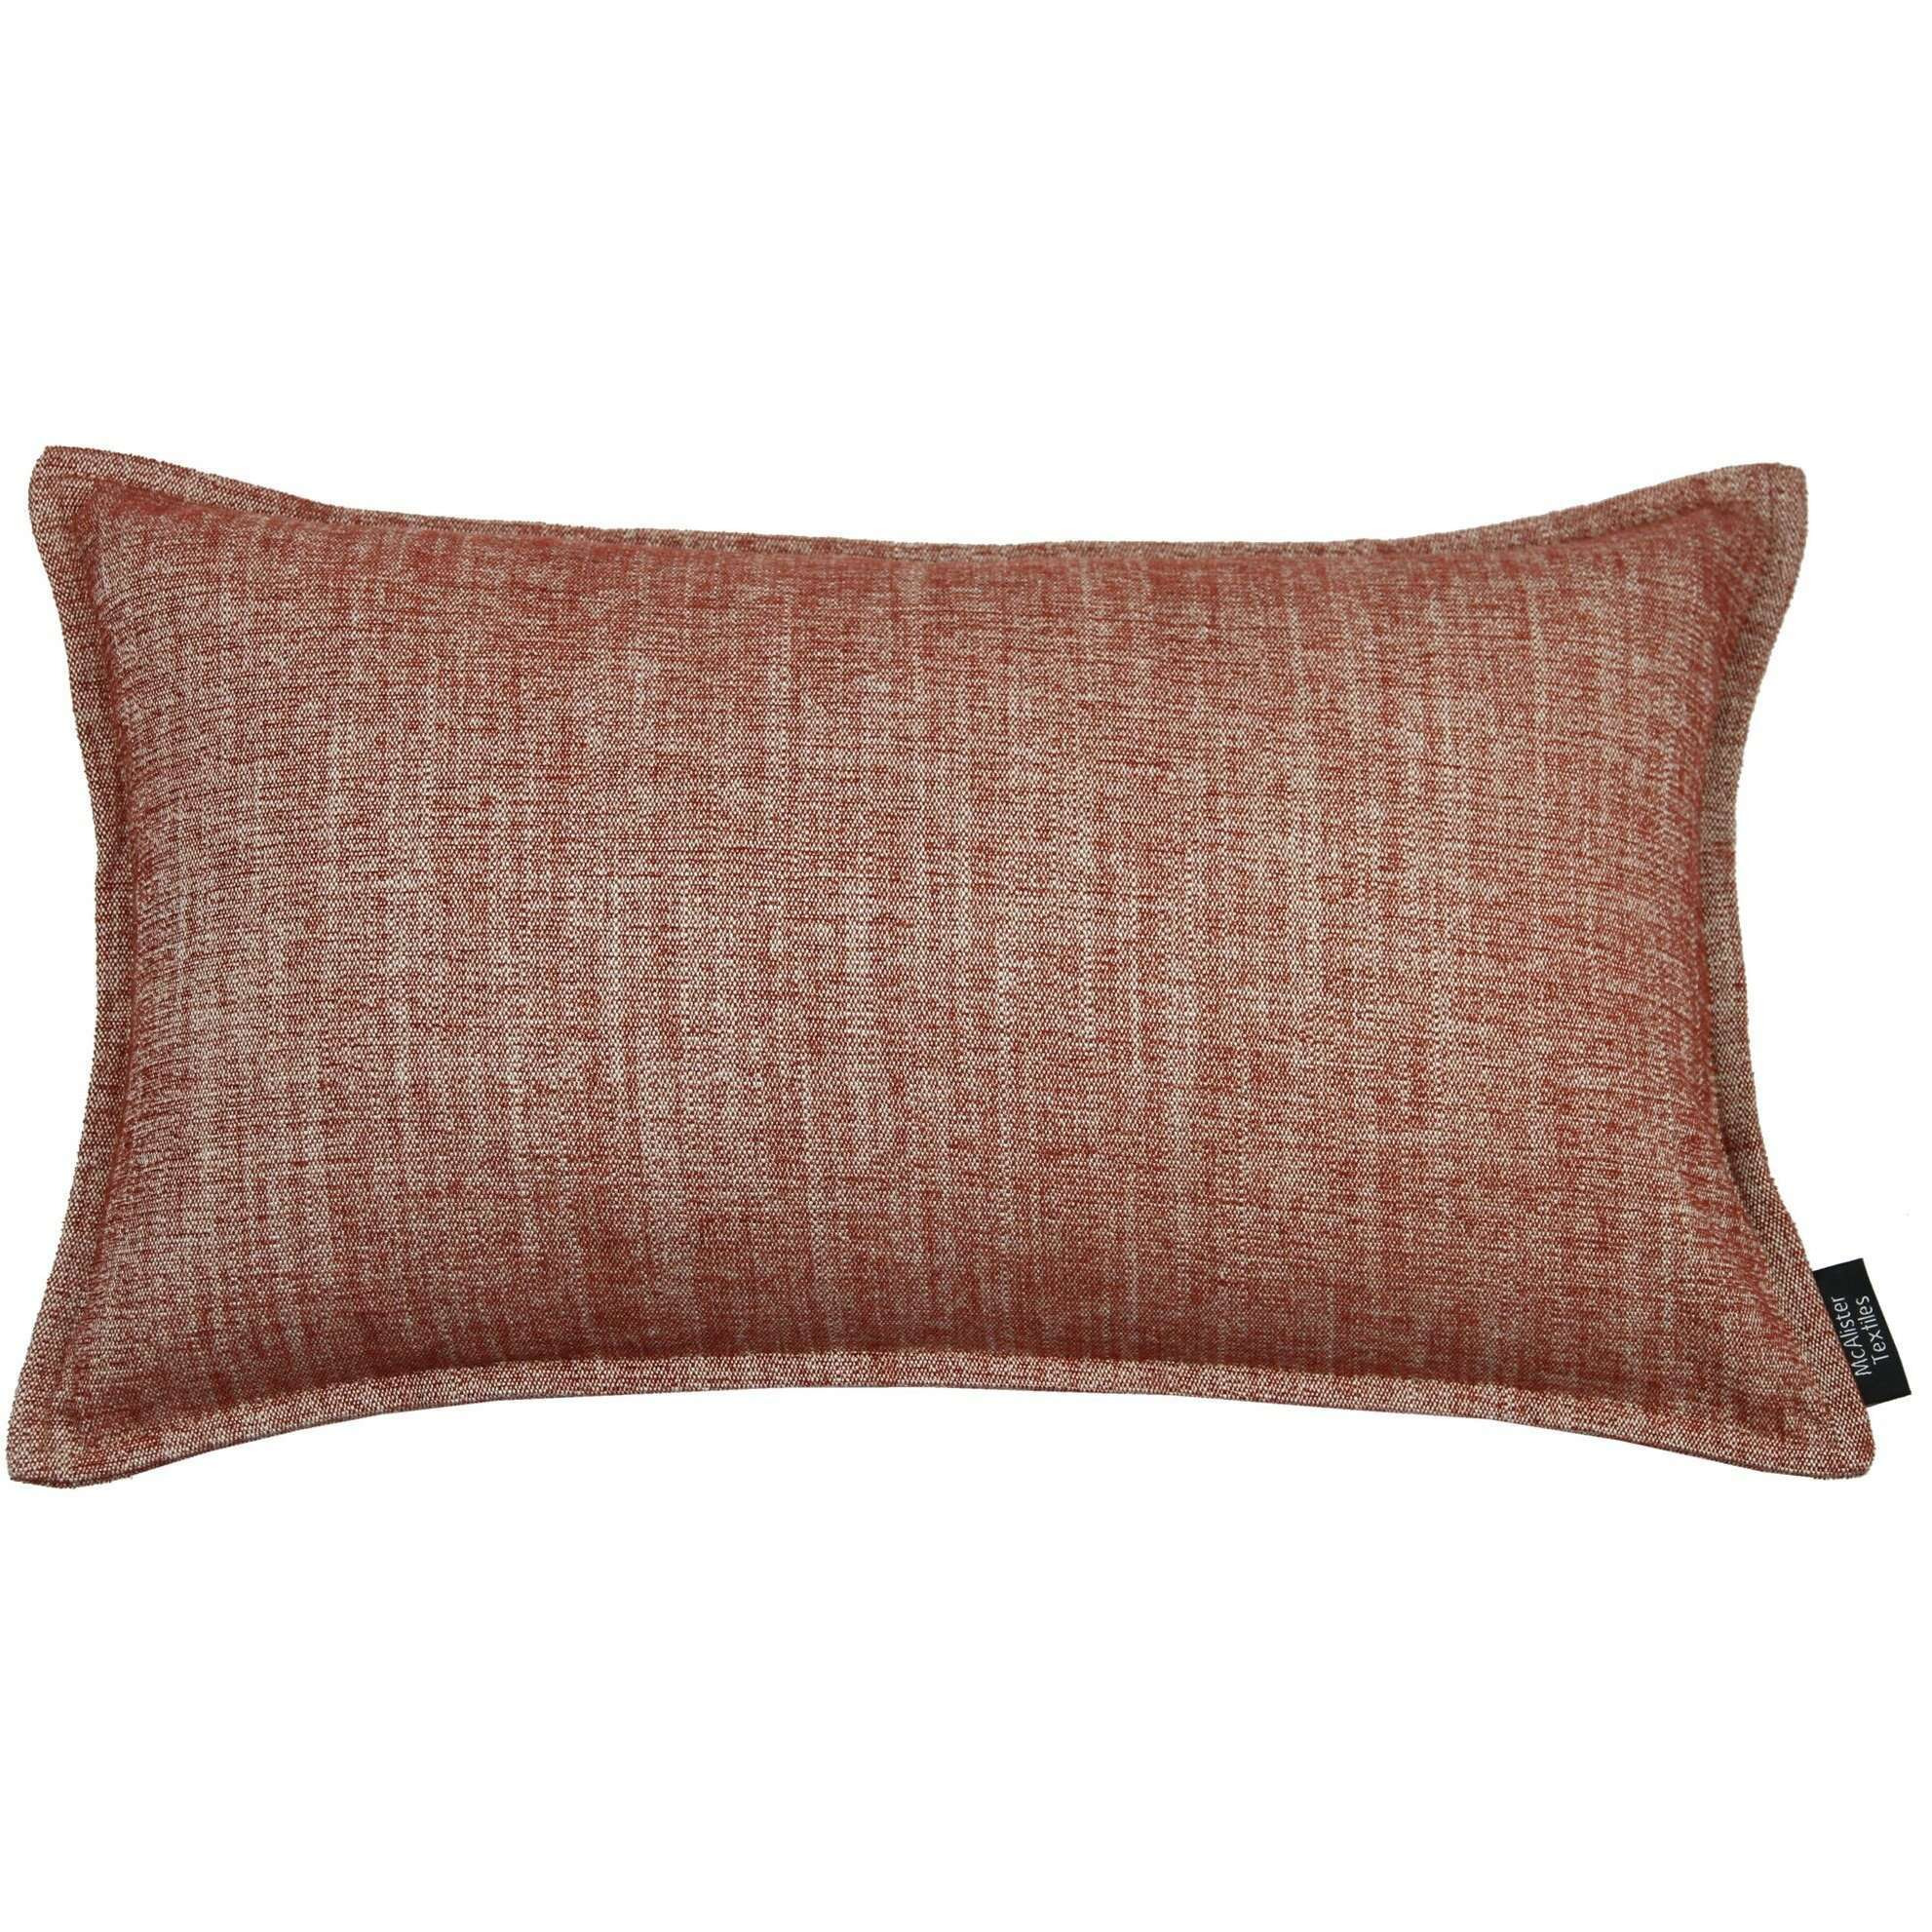 Rhumba Burnt Orange Pillow, Polyester Filler / 50cm x 30cm